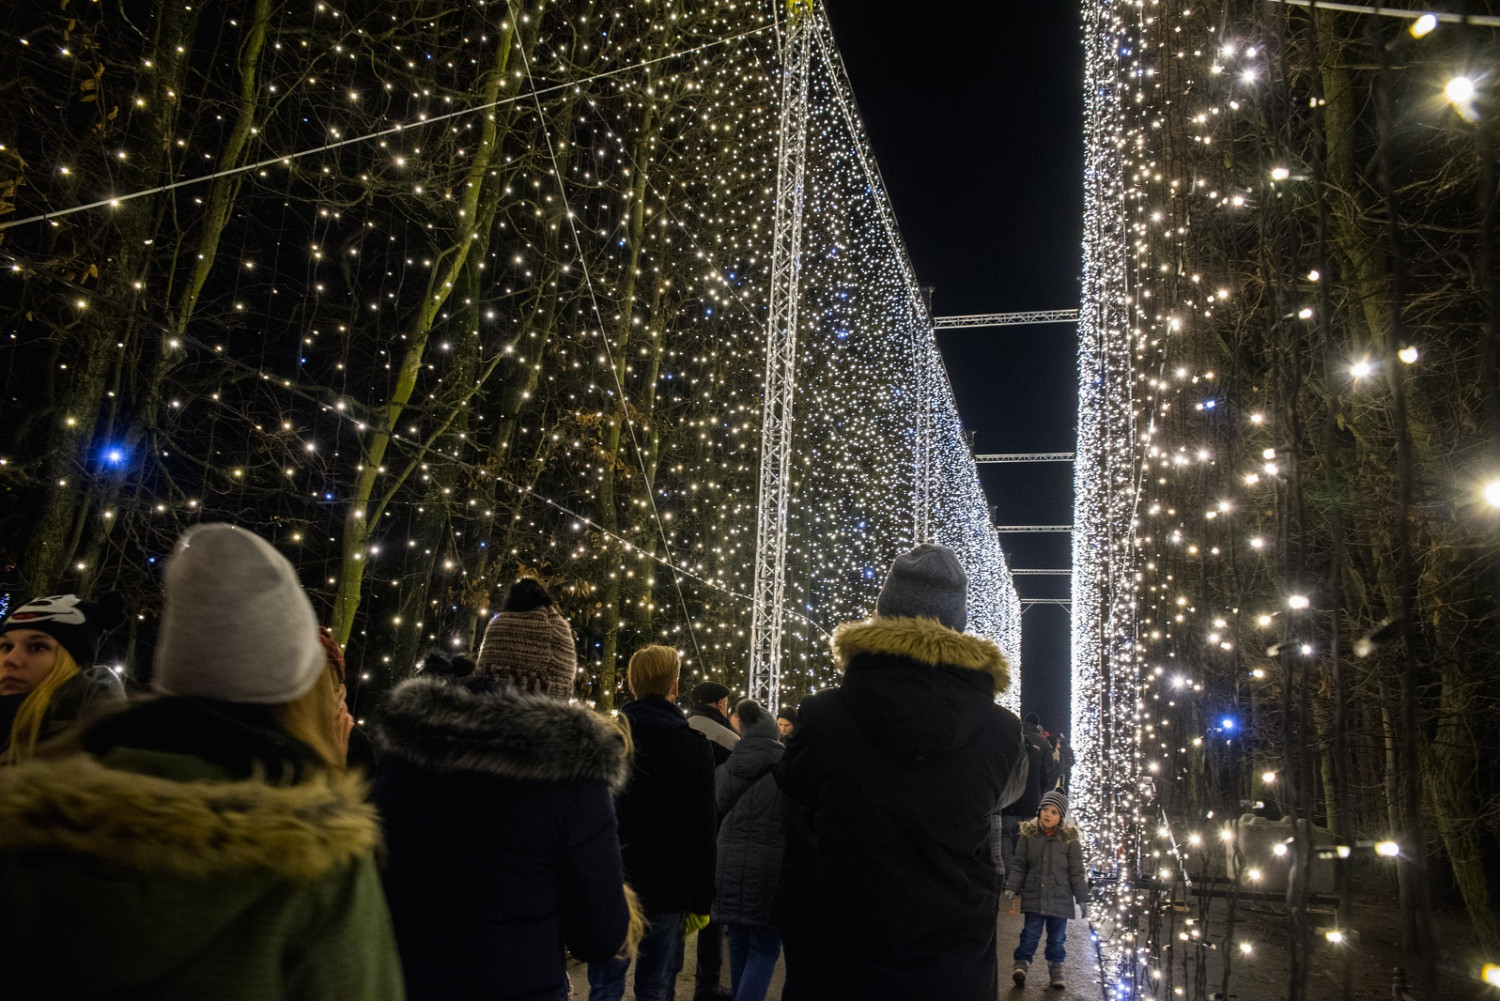 Kurtyna świetlna w Parku Oliwskim, fot. Dominik Paszliński